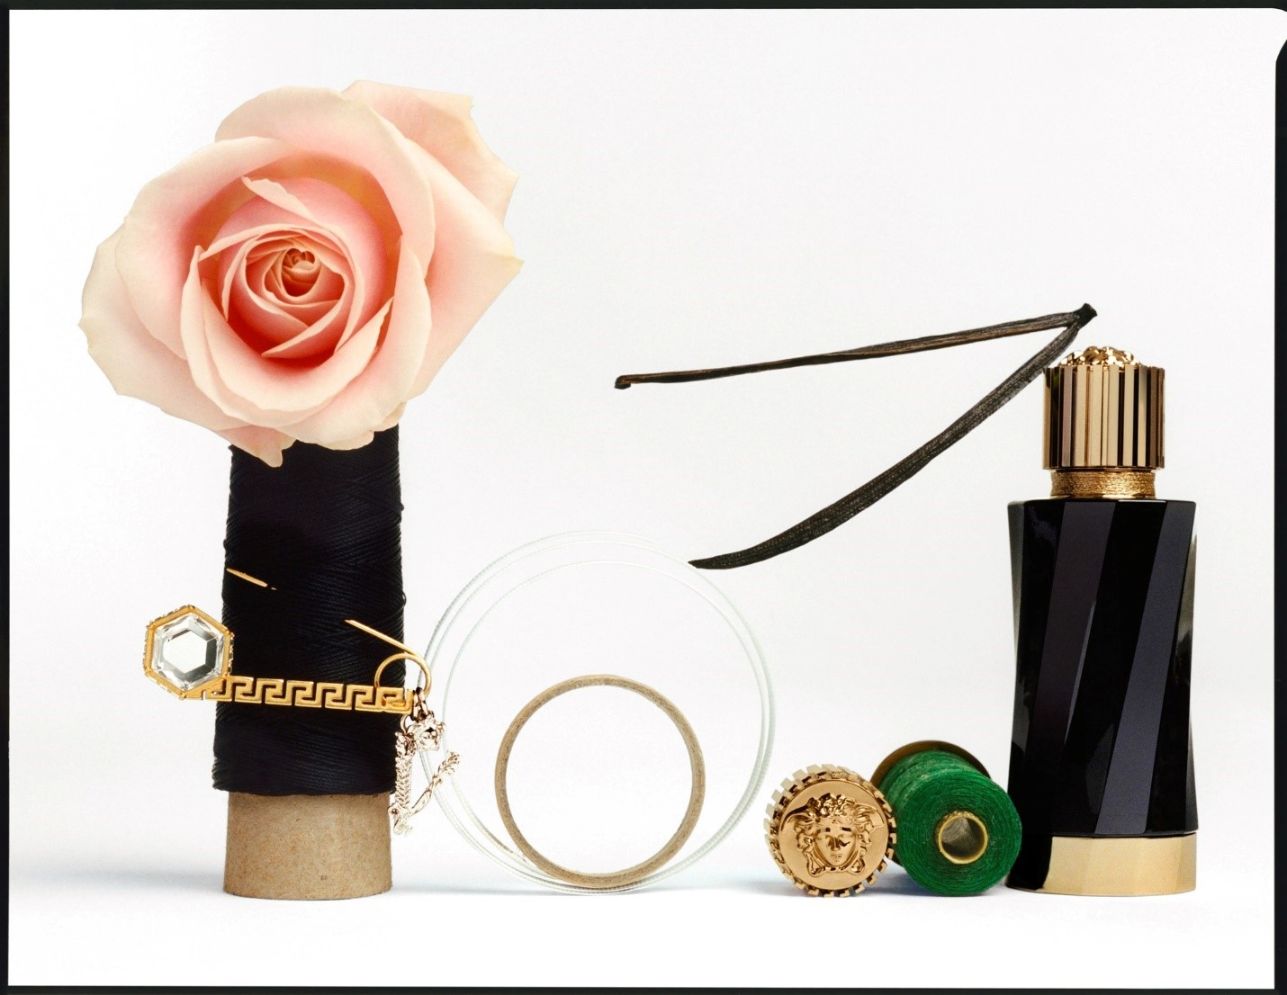 Atelier Versace 7 Atelier Versace và nghệ thuật may đo hương thơm